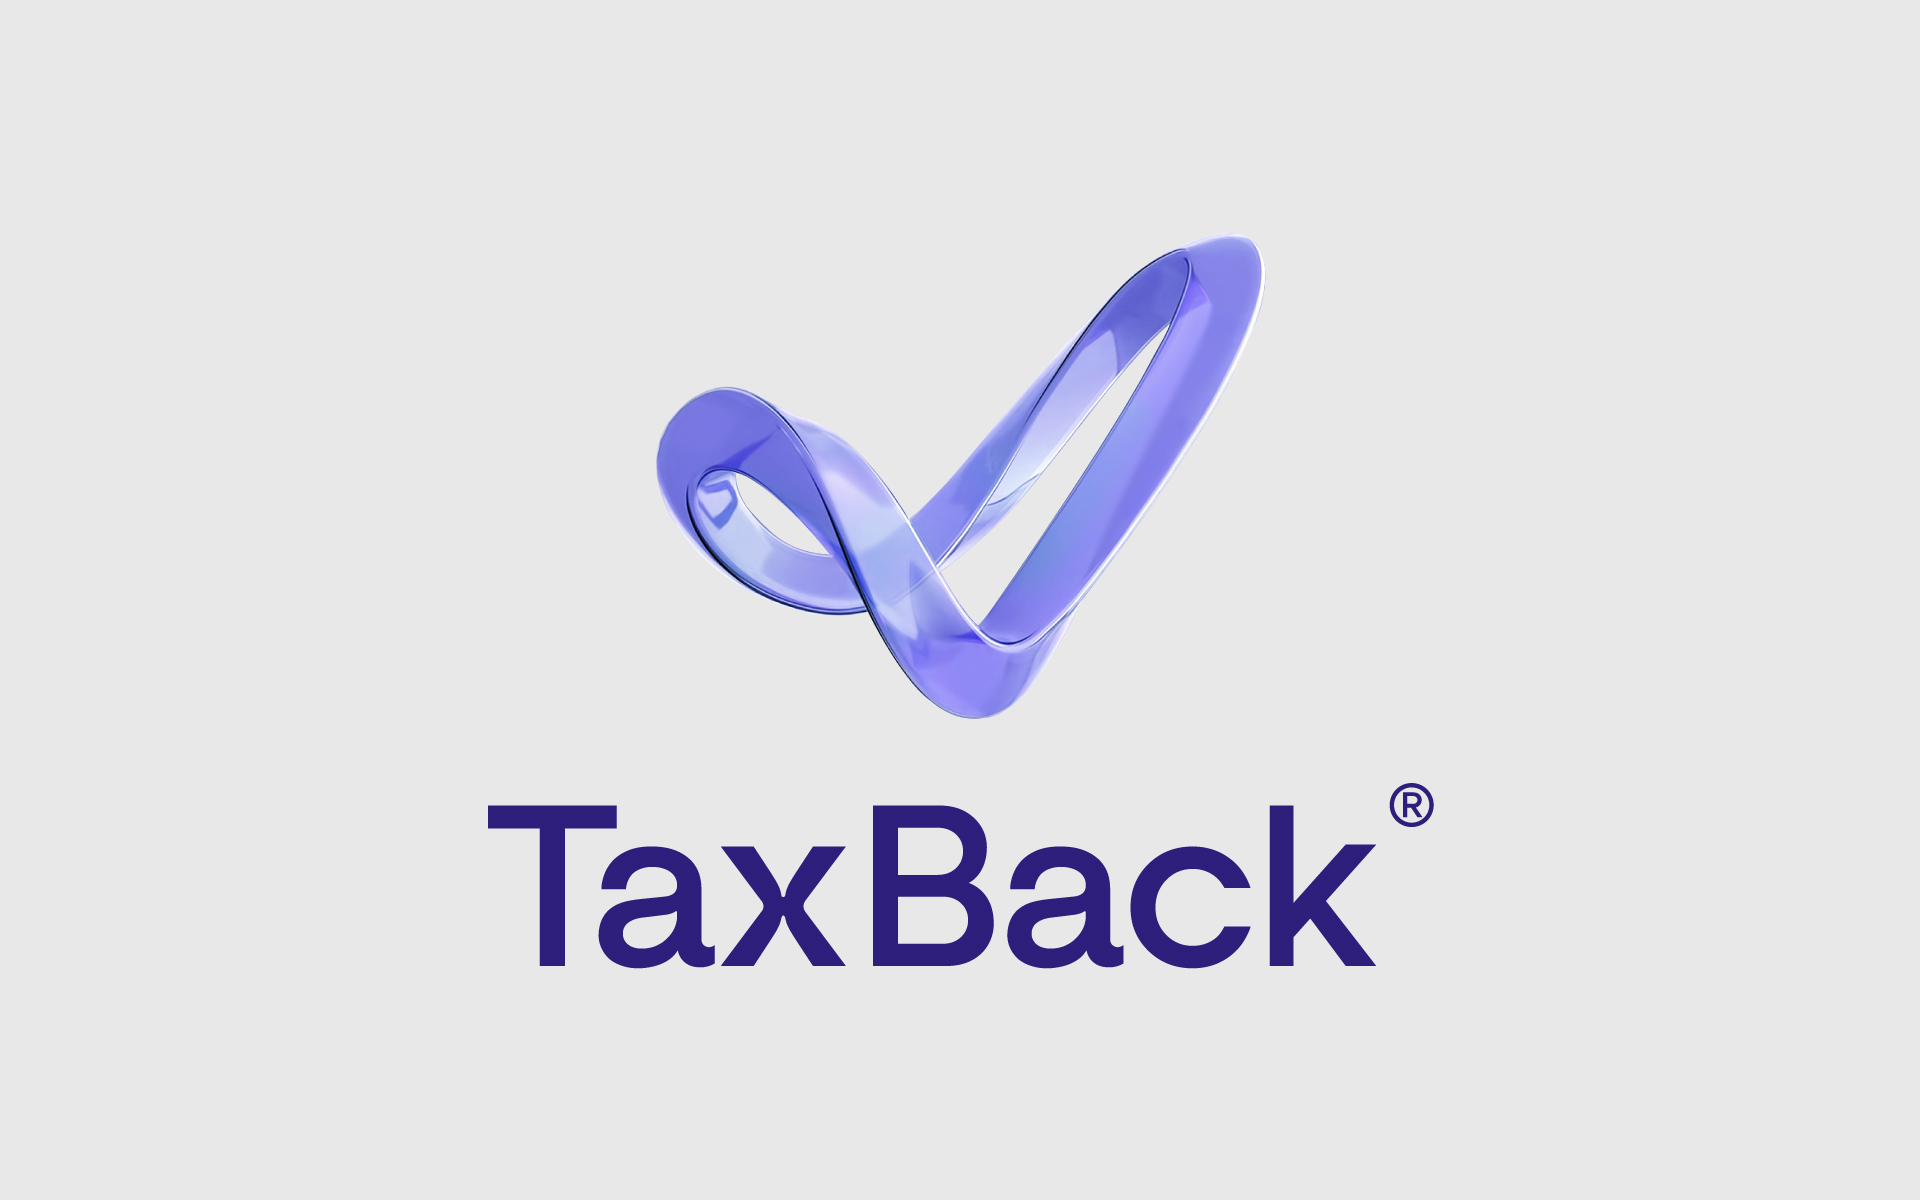 TaxBack Brand Identity